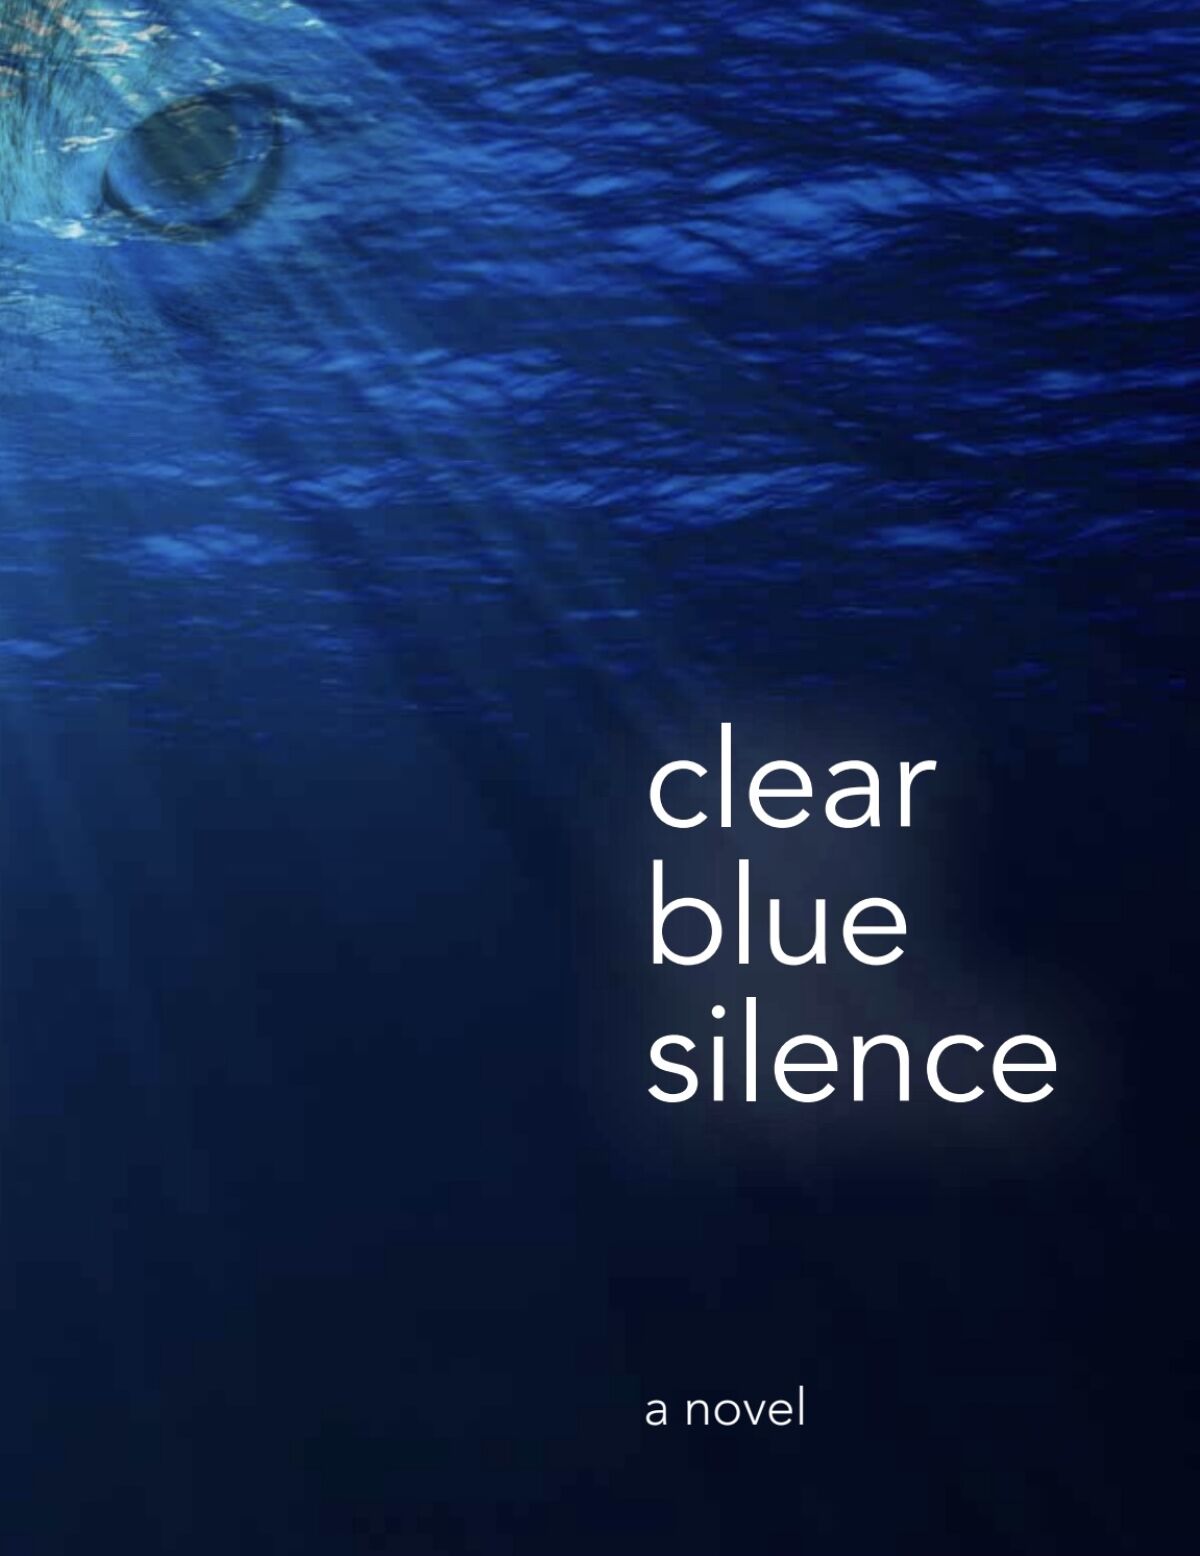  “Clear Blue Silence” by author Allan Havis